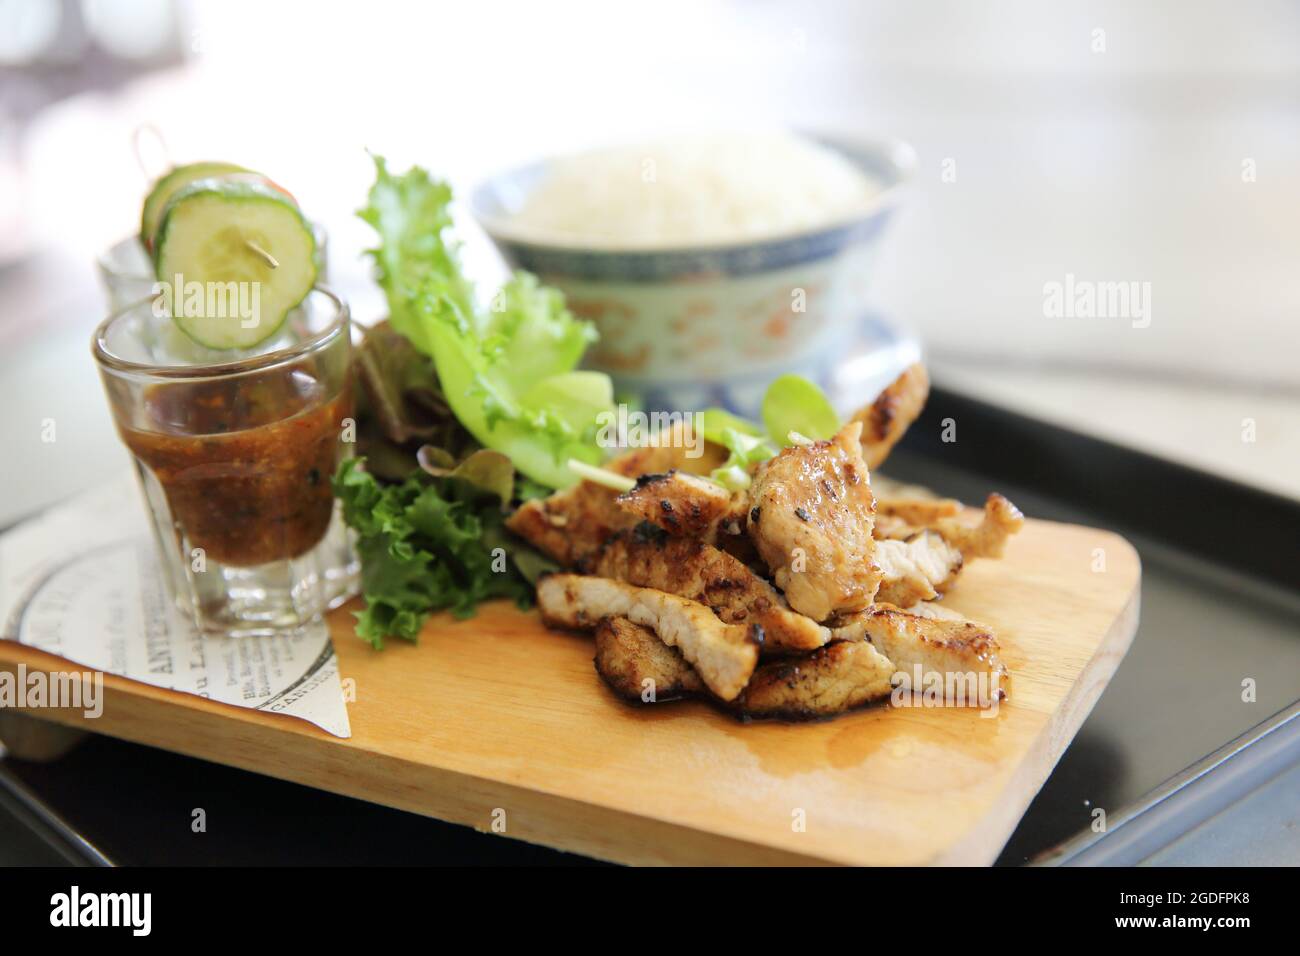 Cuisine thaïlandaise , porc grillé avec sauce épicée Banque D'Images